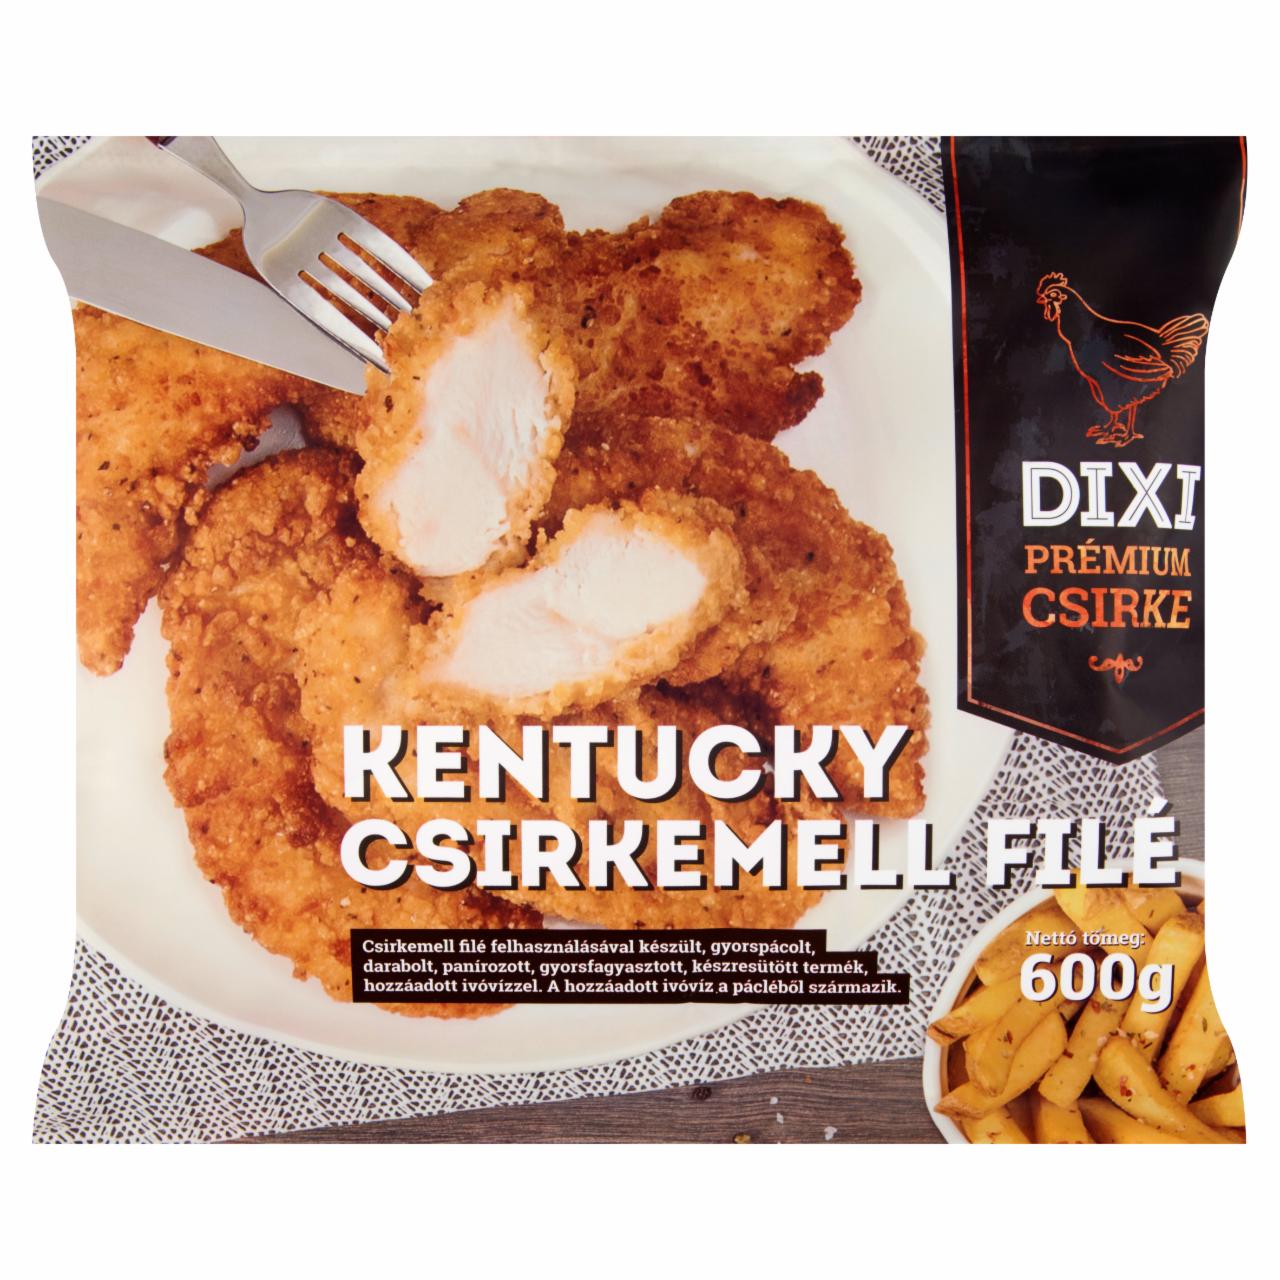 Képek - Dixi Prémium Csirke gyorsfagyasztott Kentucky csirkemell filé 600 g